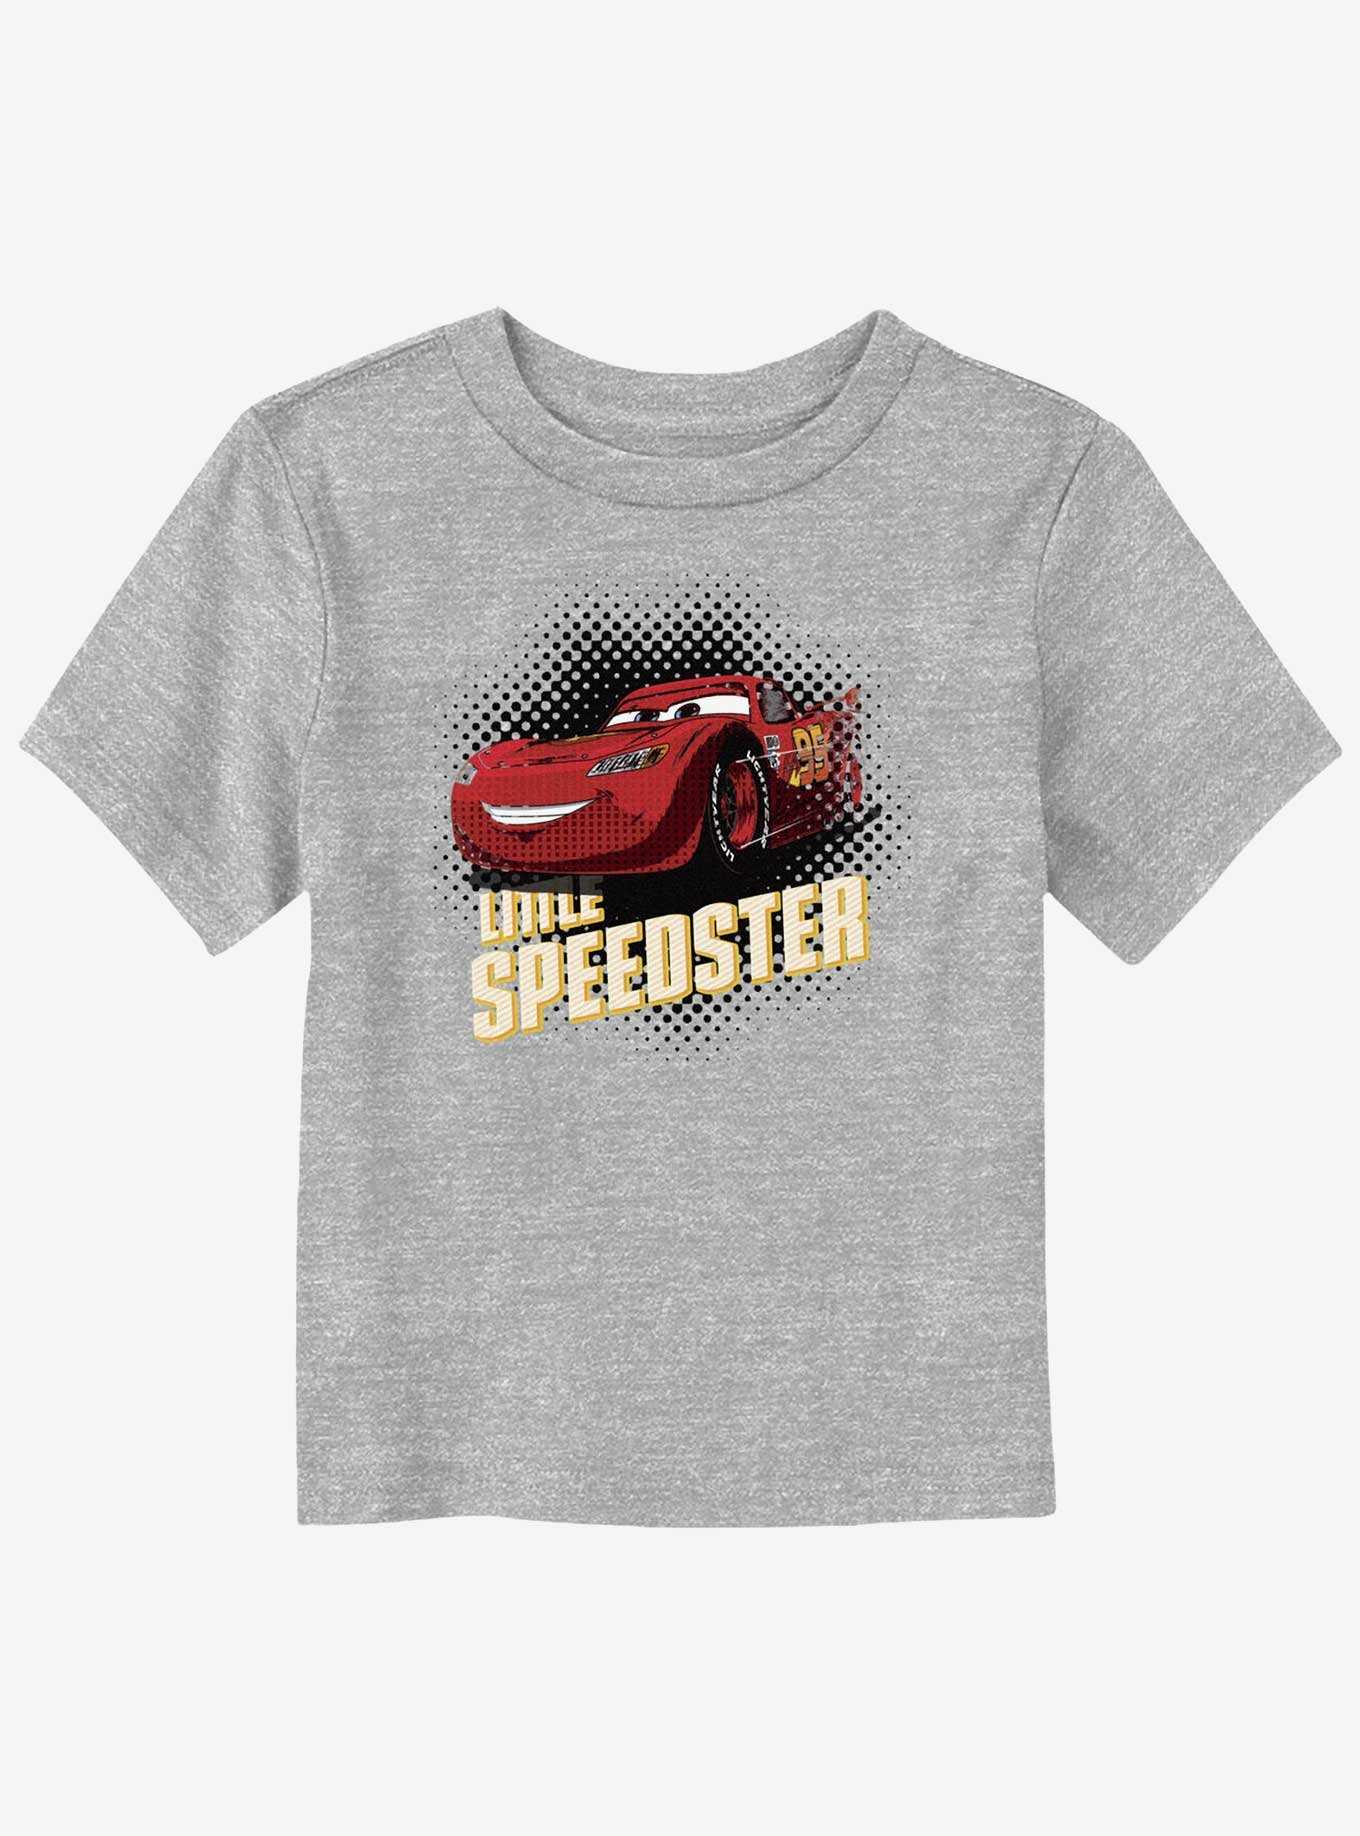 Disney Pixar Cars Little Speedster Toddler T-Shirt, , hi-res